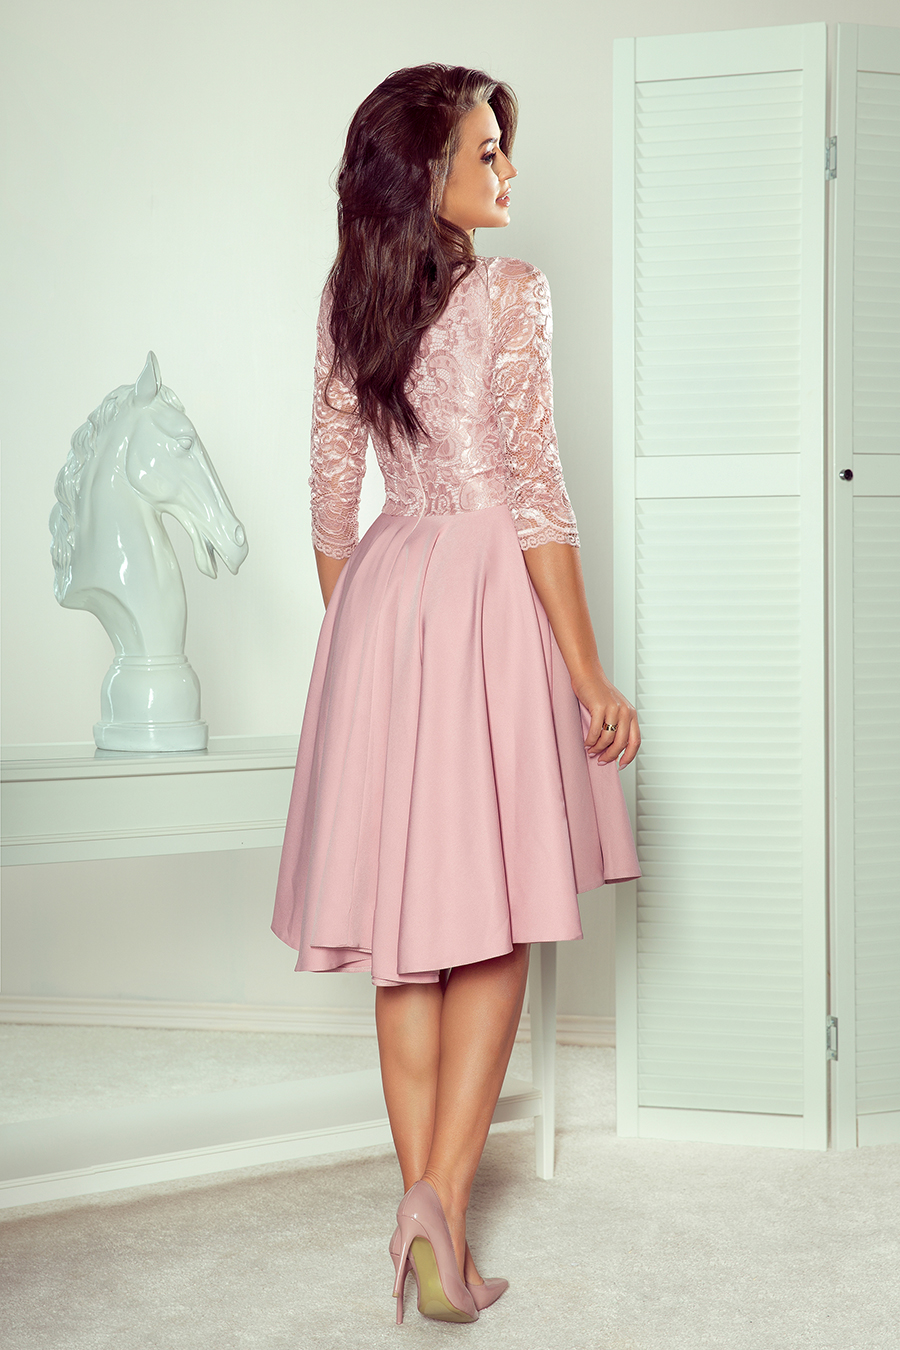 210-11 NICOLLE - Exkluzivní šaty s krajkou - prášek růžový